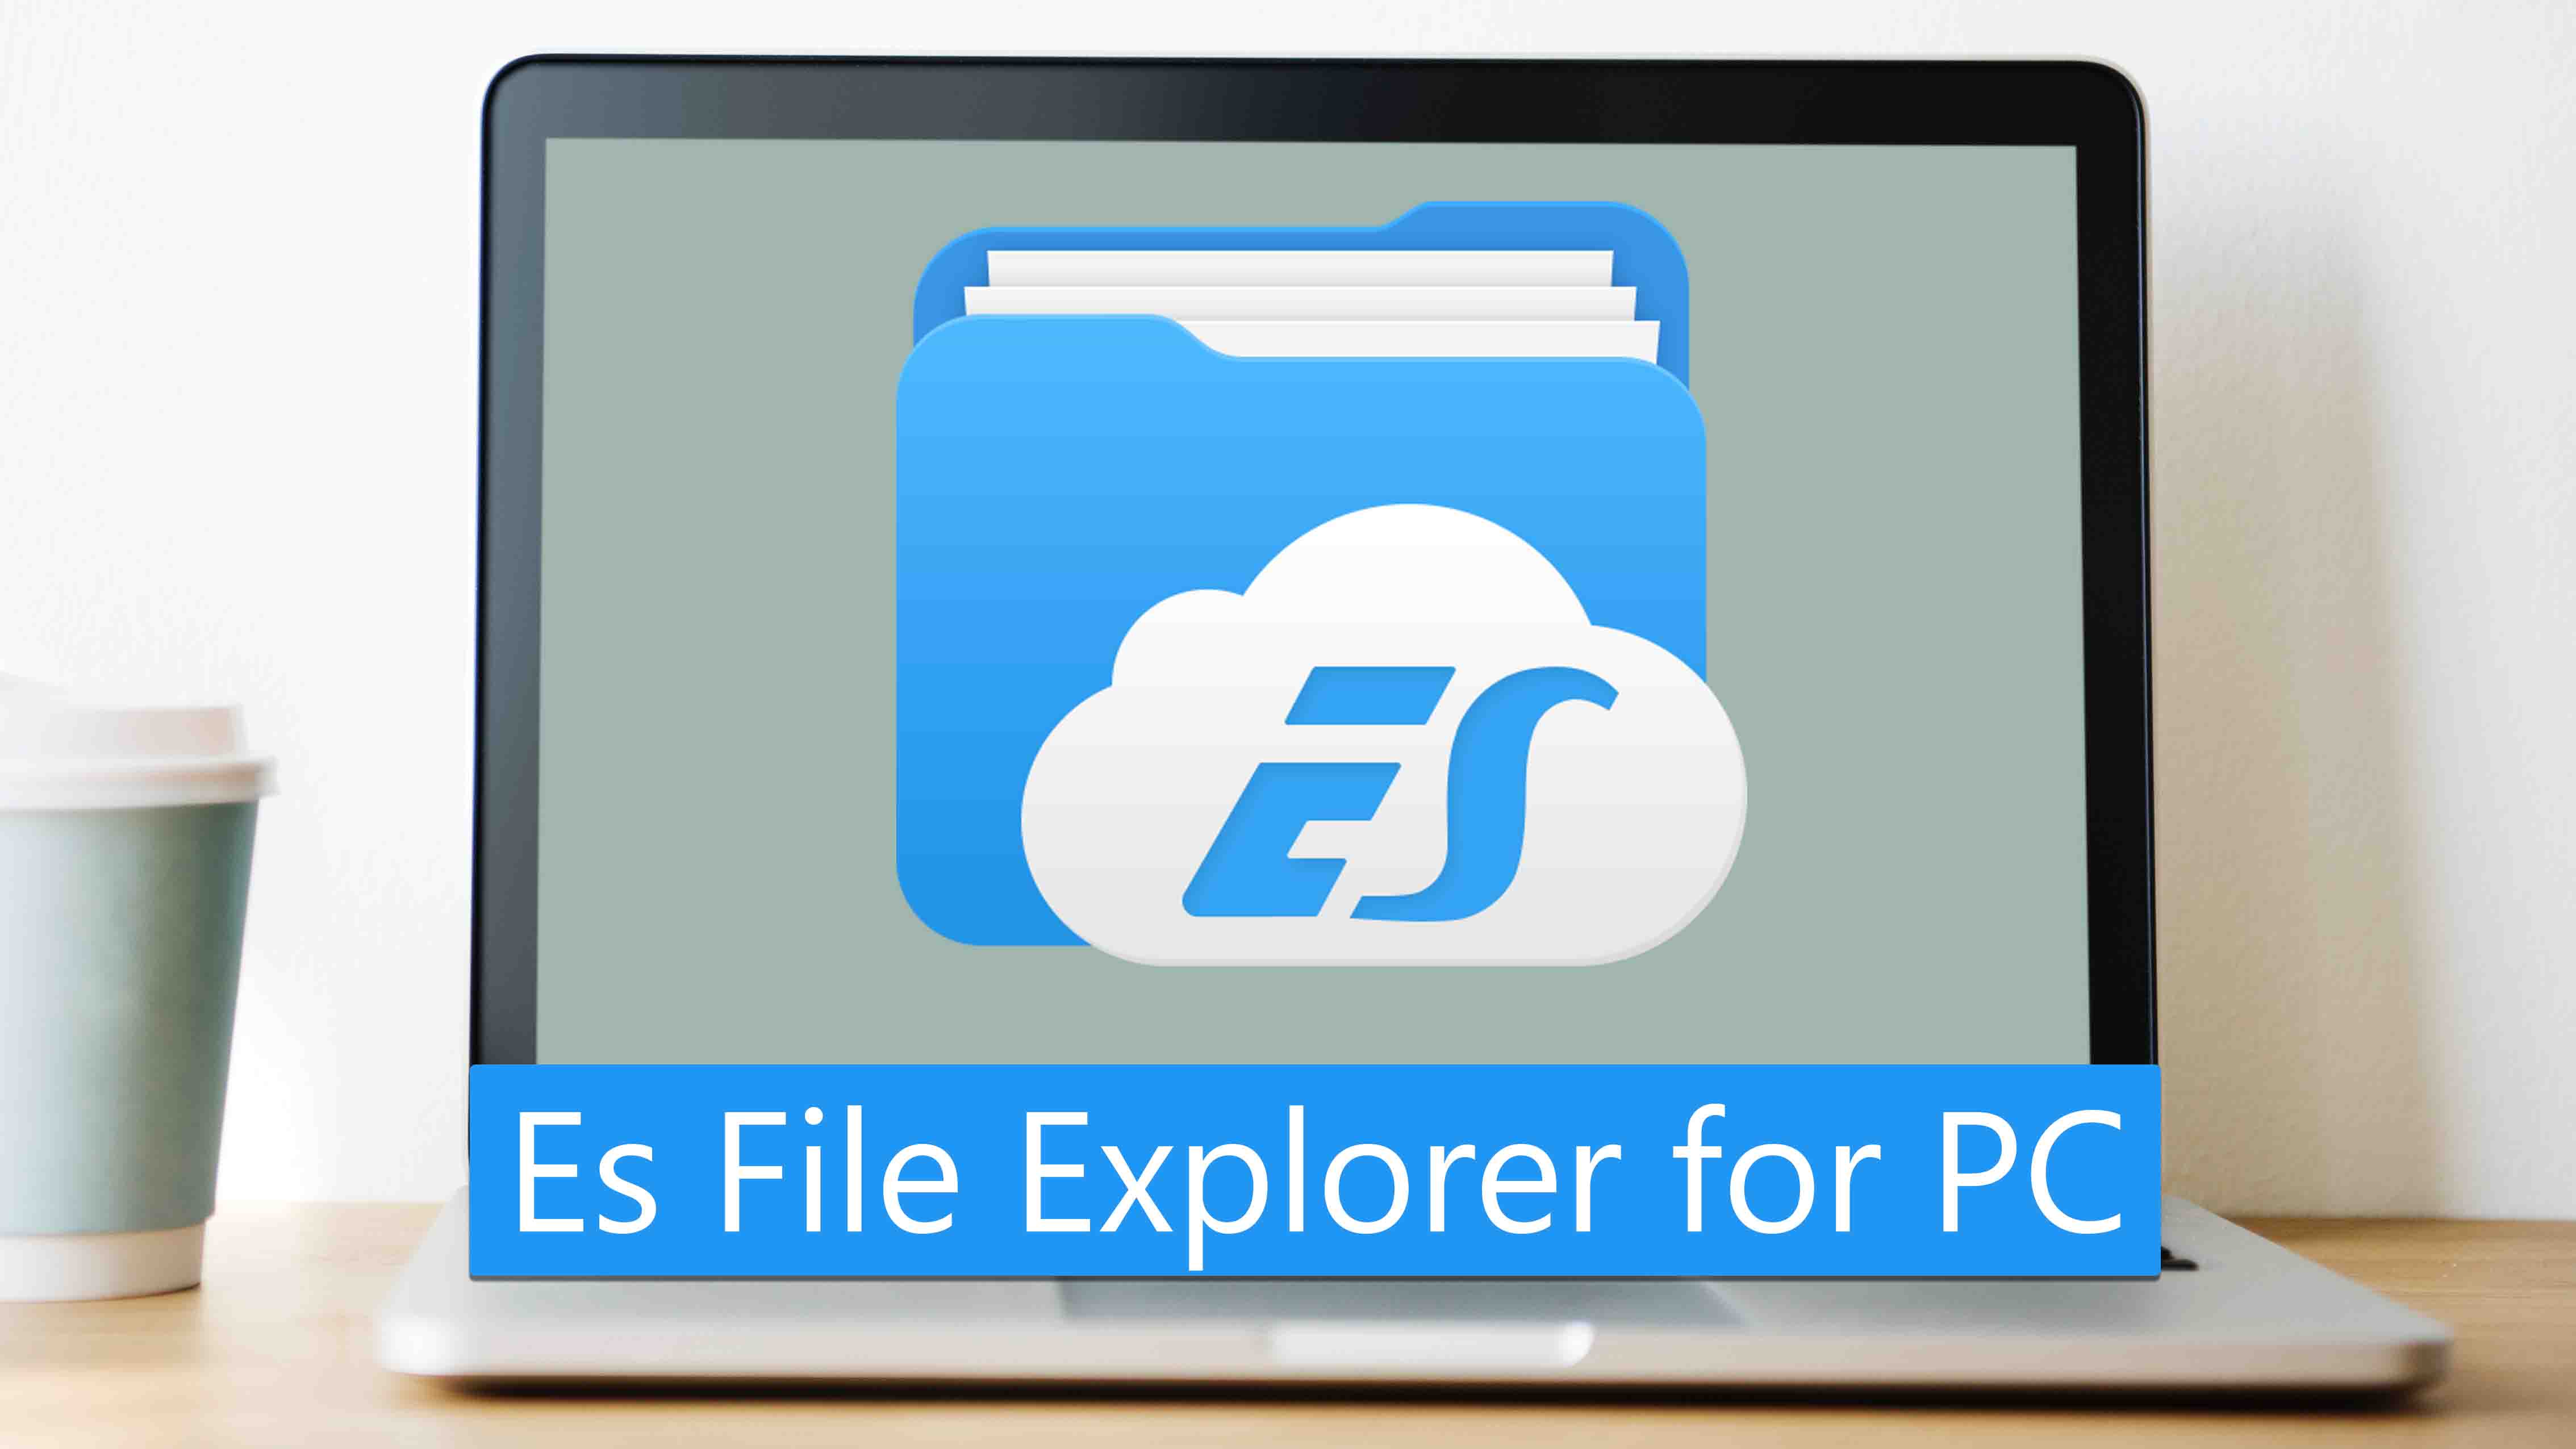 es file explorer for windows 10 download